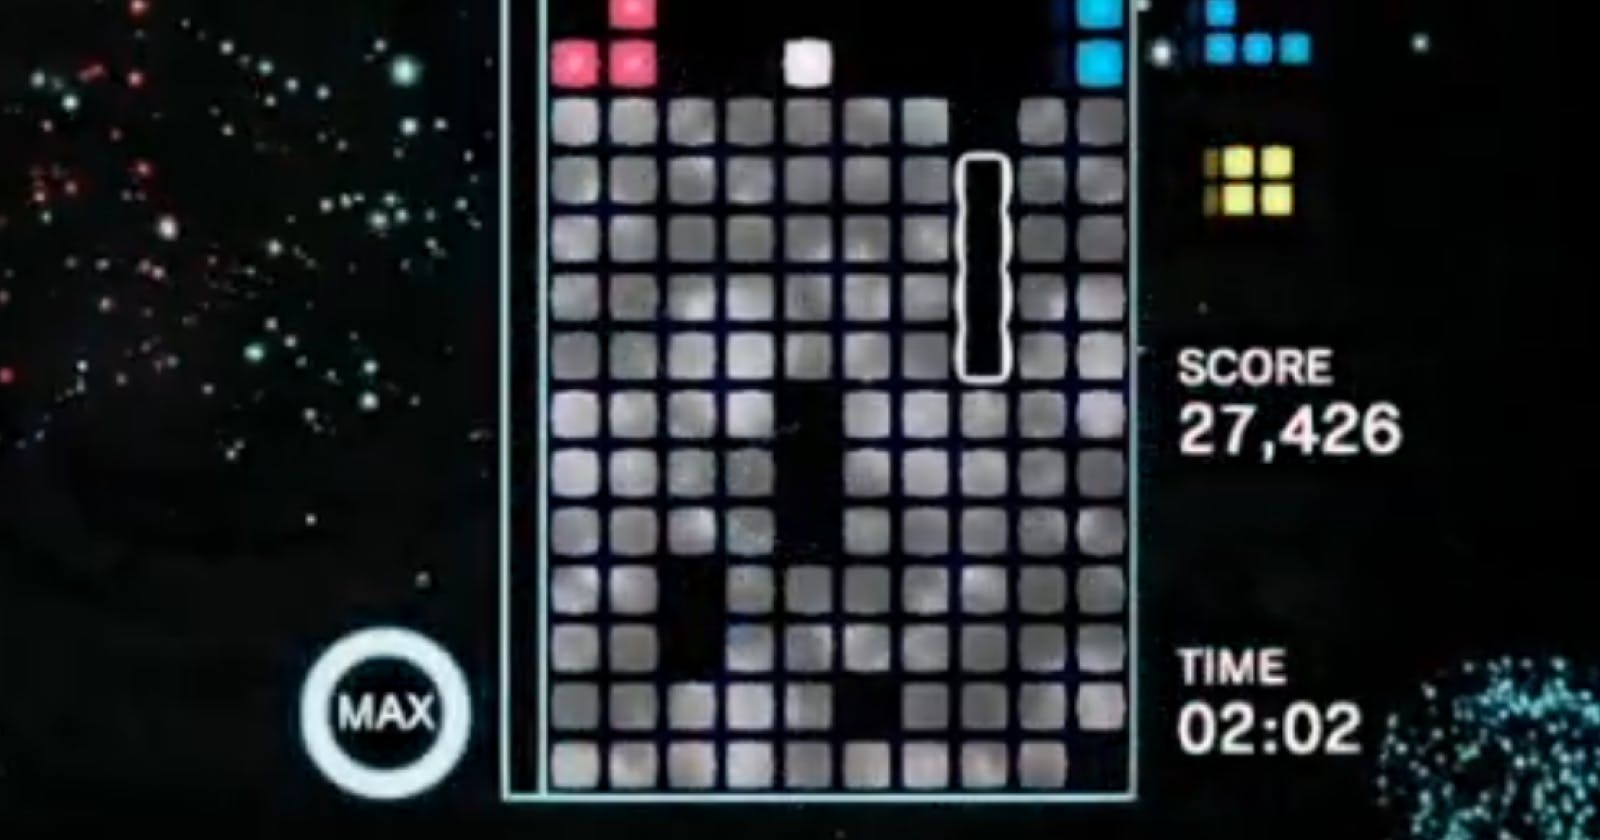 Tetris garbage reference